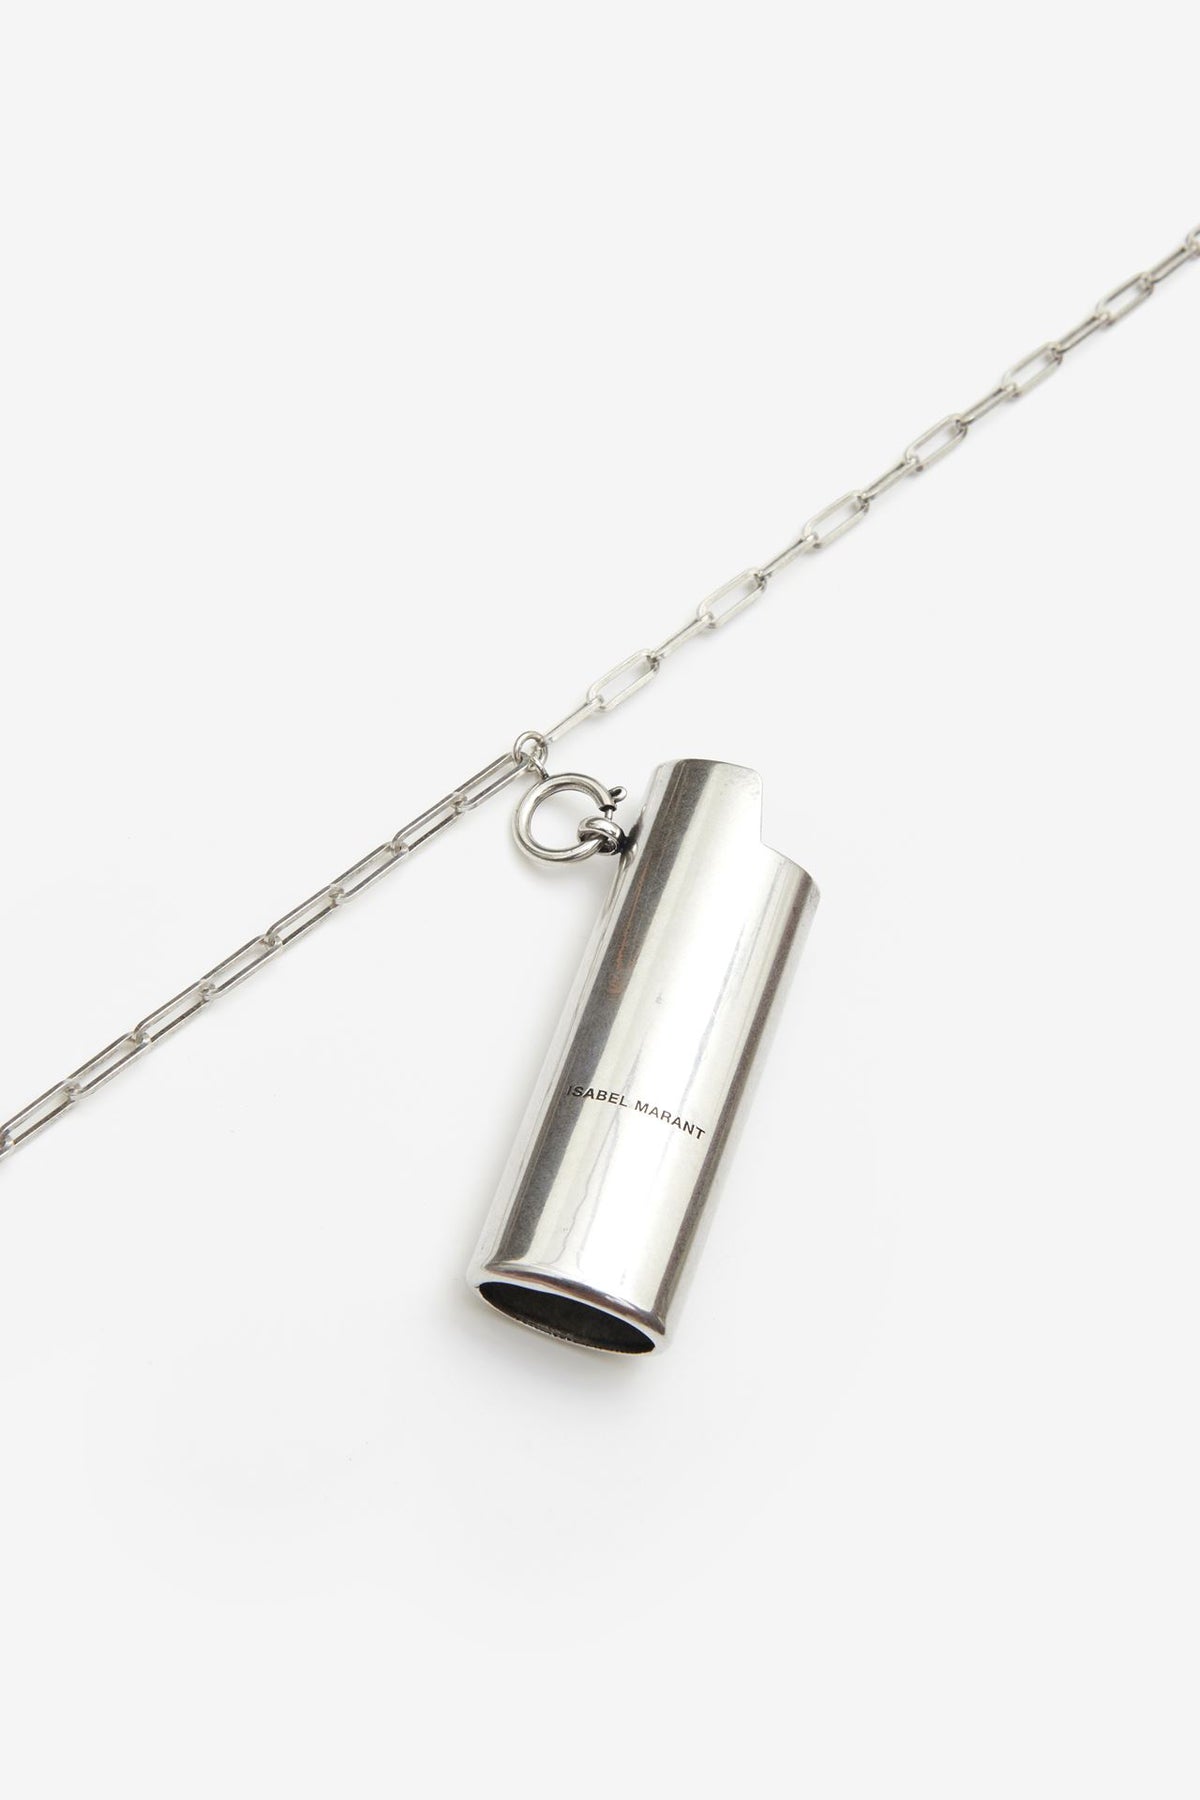 Isabel Marant Lighter Case Pendant Necklace